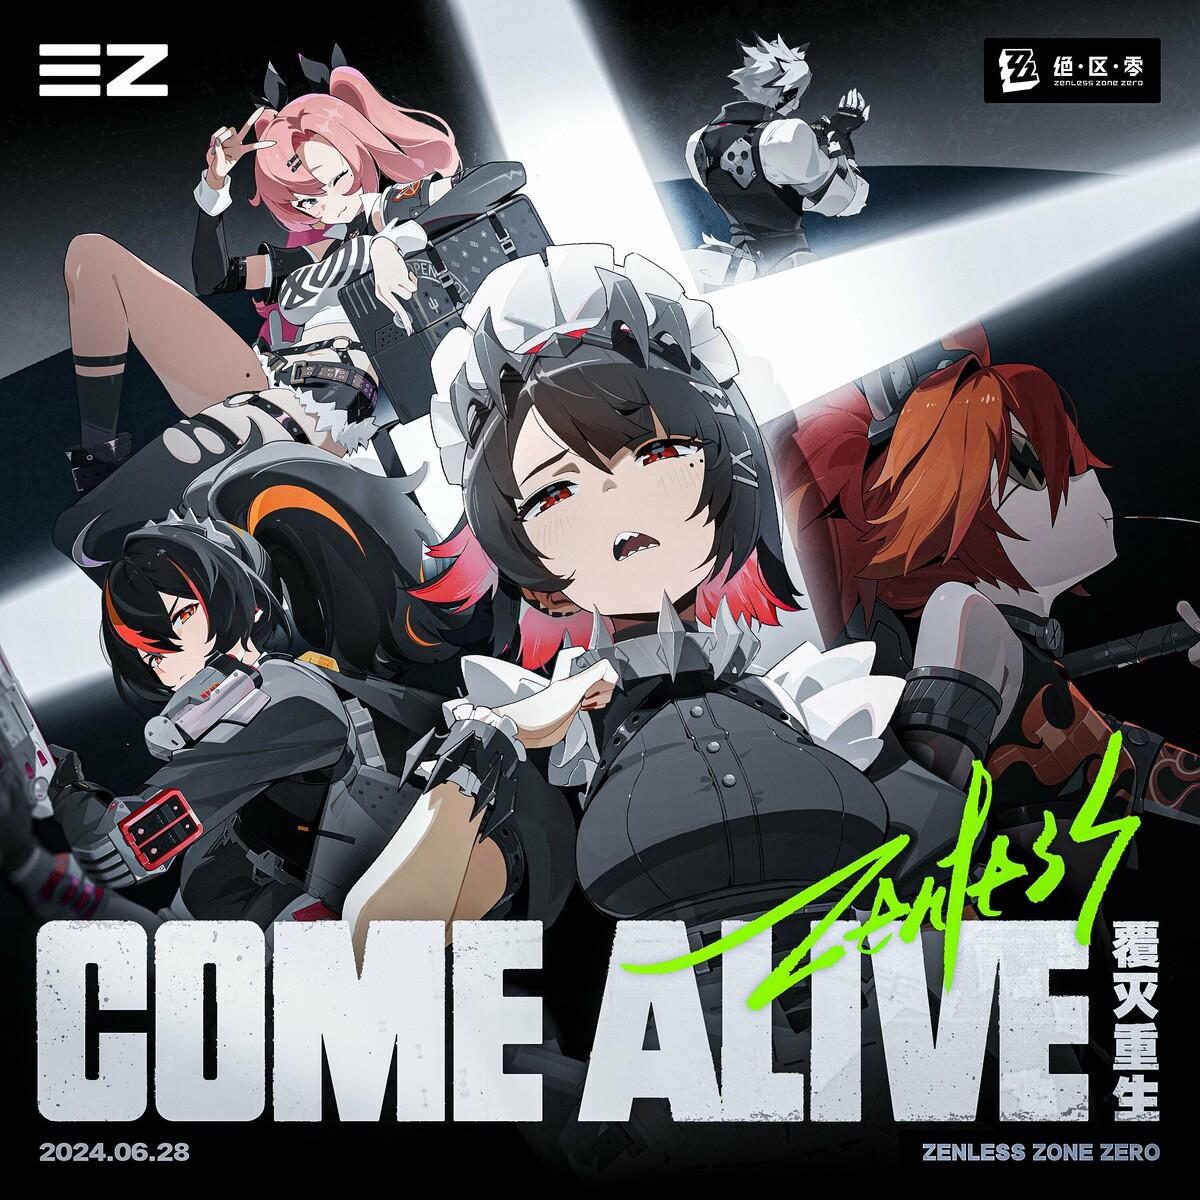 Zenless Zone Zero - Come Alive